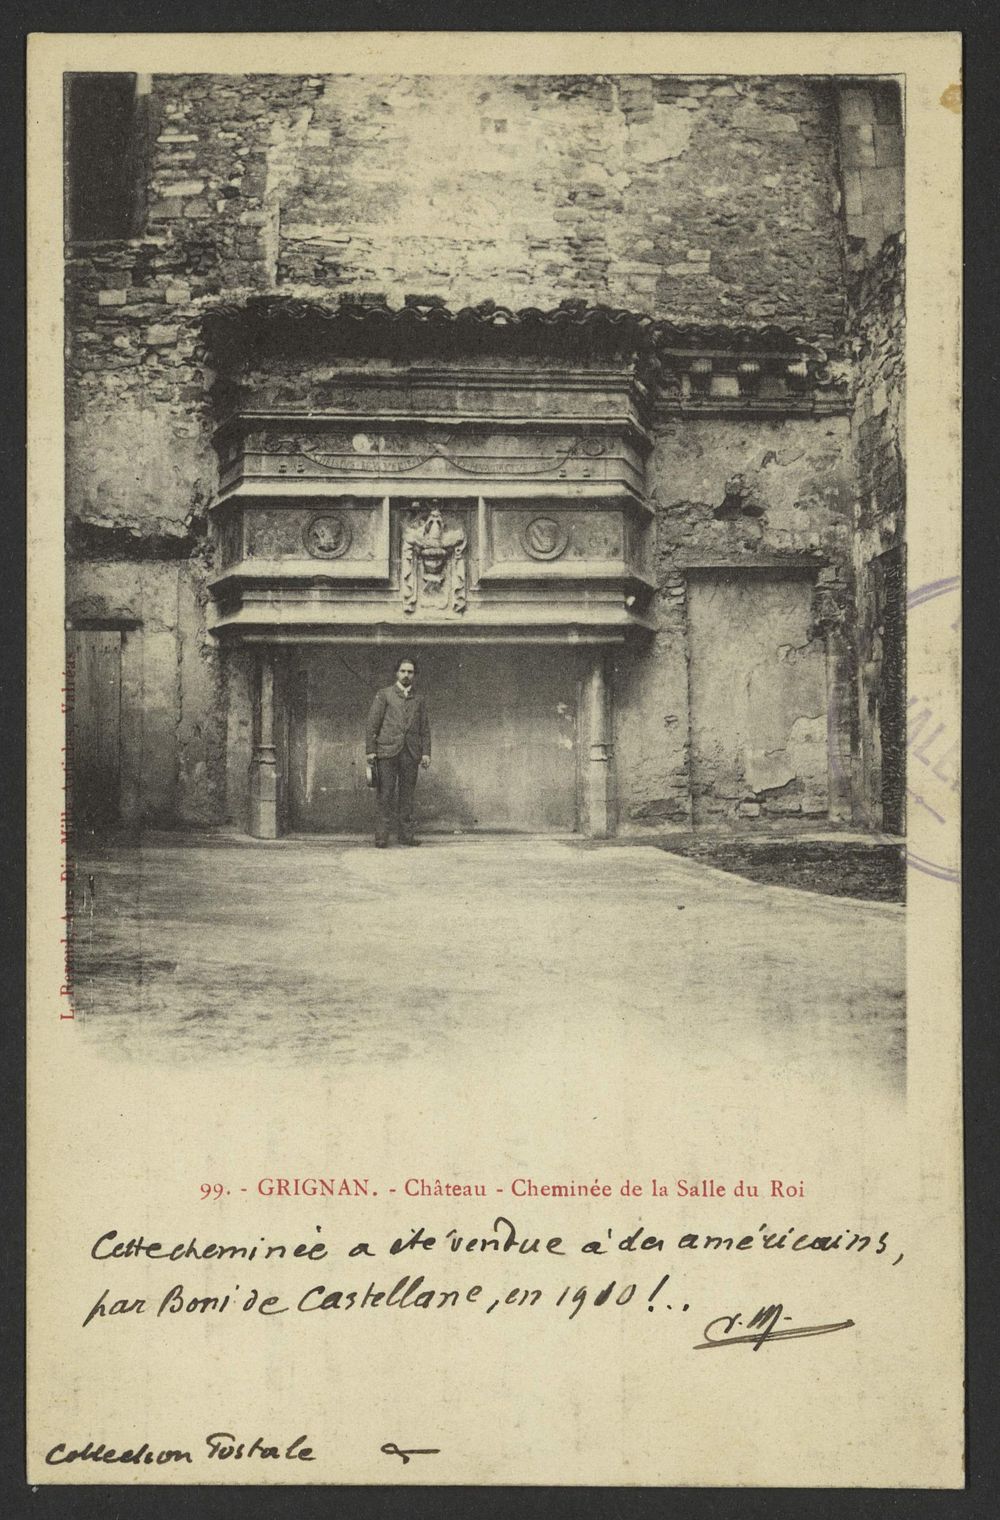 Grignan. - Château - Cheminée de la Salle duRoi